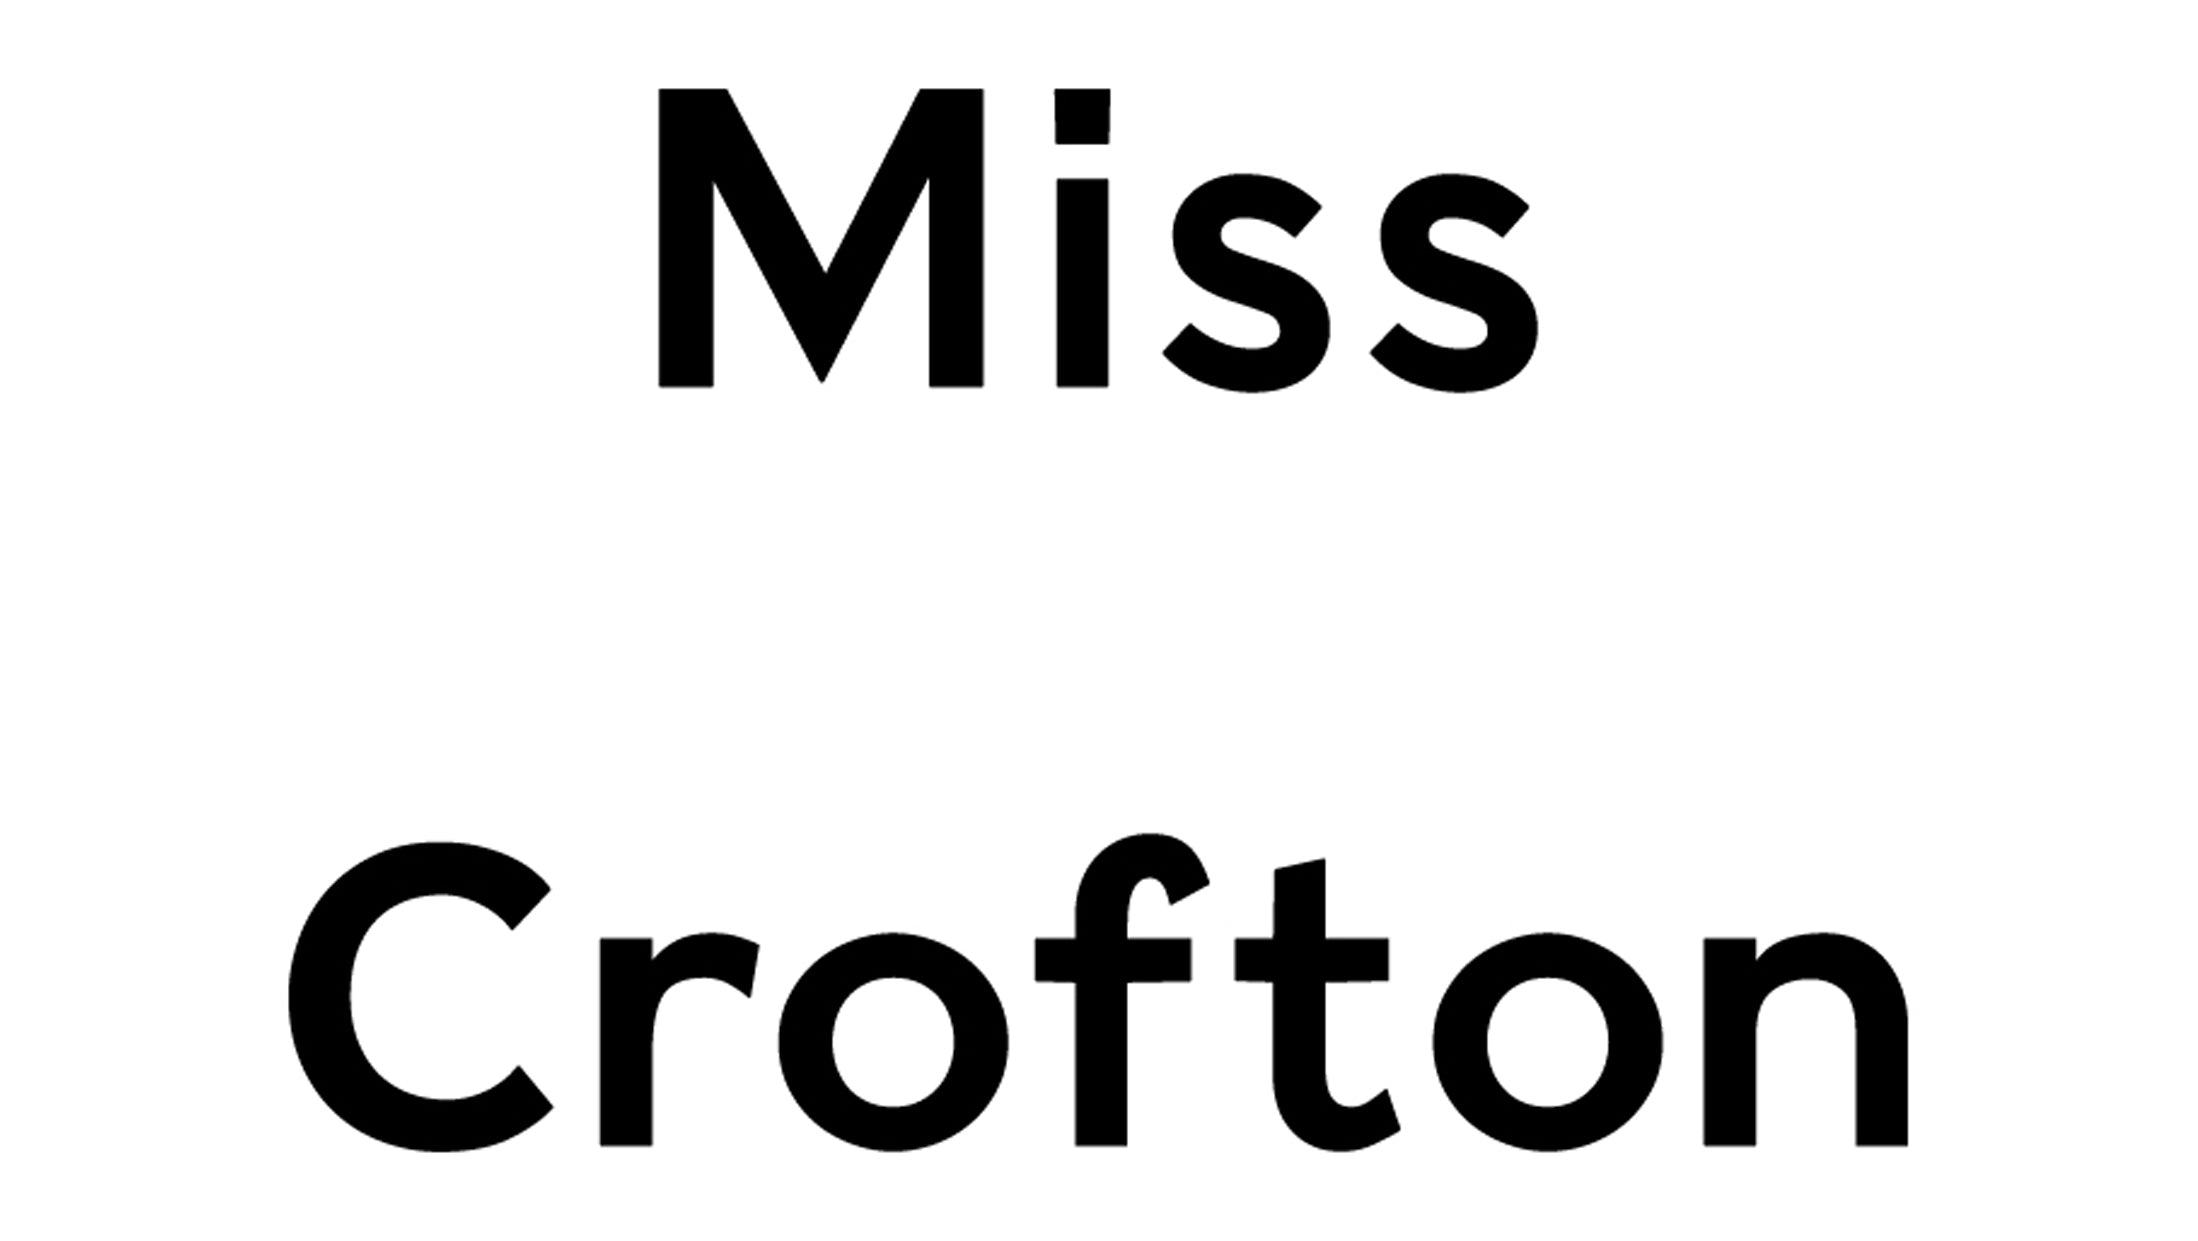 Miss Crofton – misscrofton